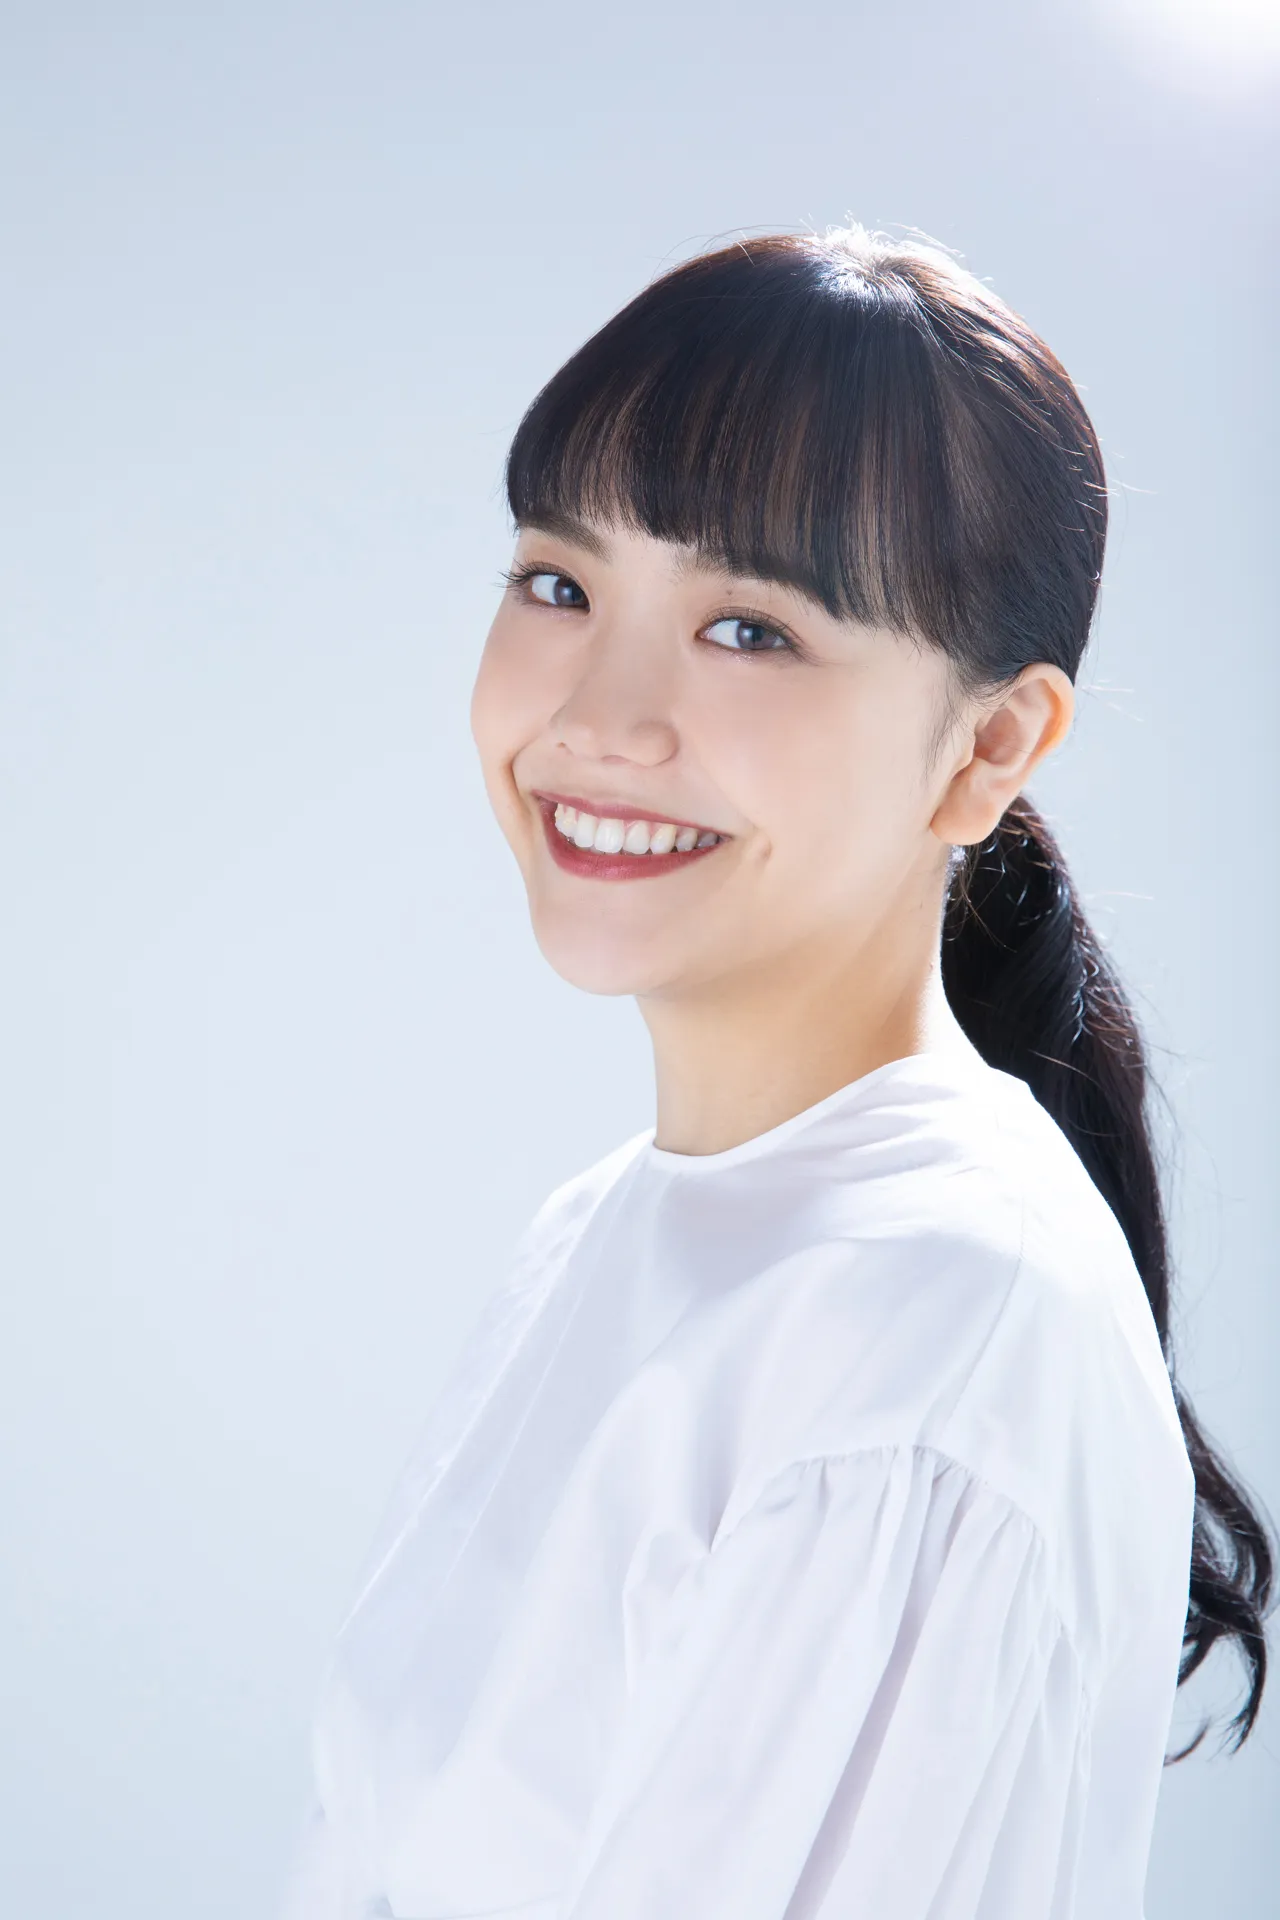 モデル、タレント、女優としてさまざまな分野で活躍中の松井愛莉